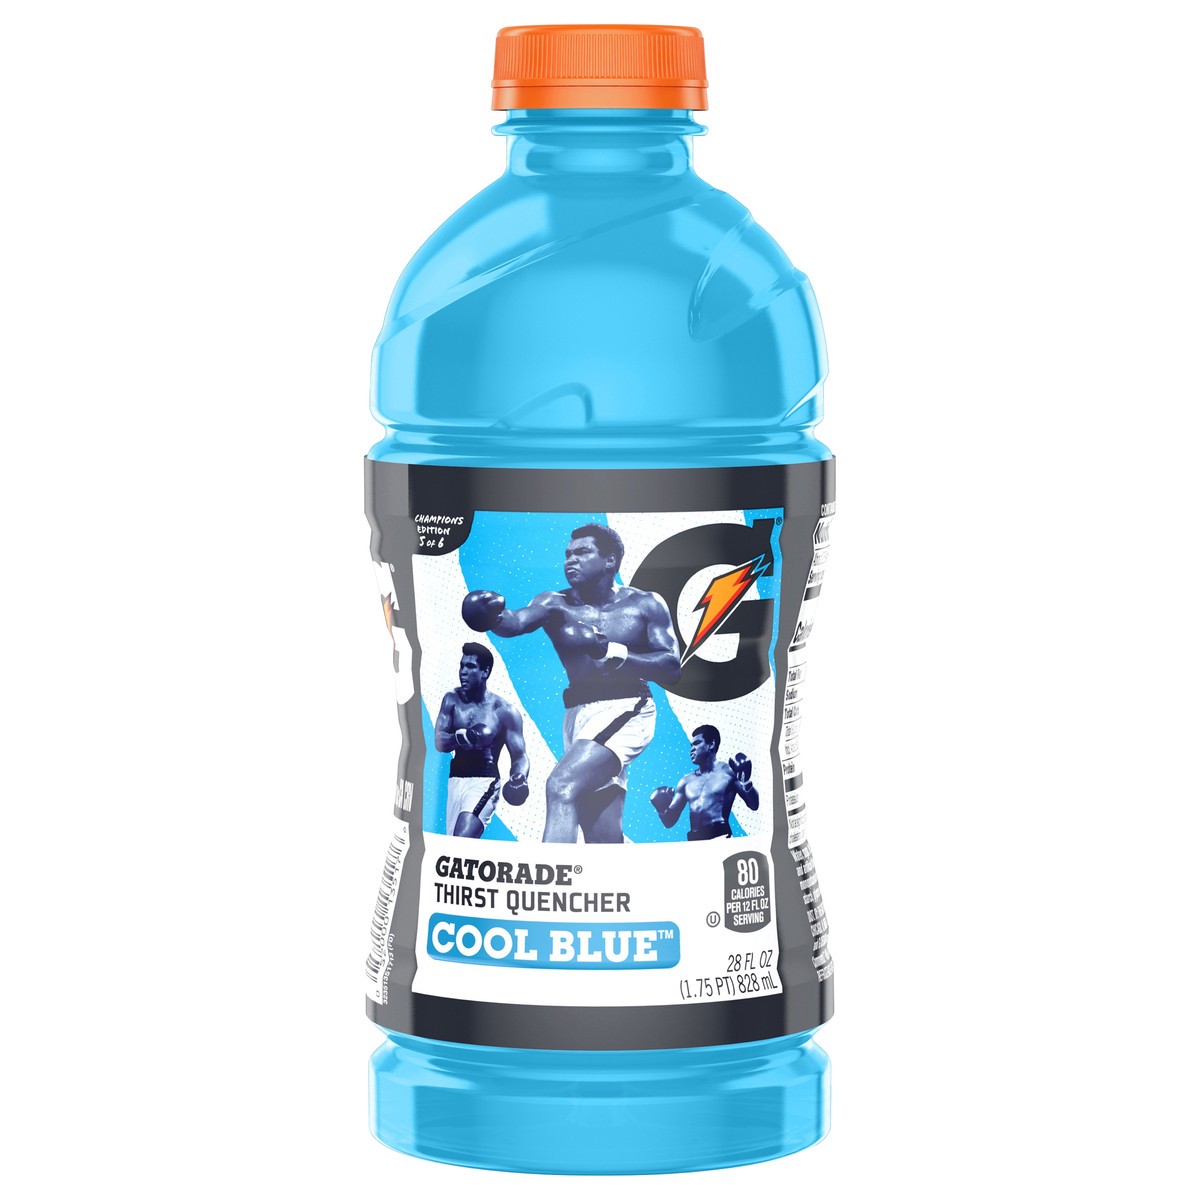 Gatorade Cool Blue Sports Drink - 28 fl oz Bottle 28 fl oz